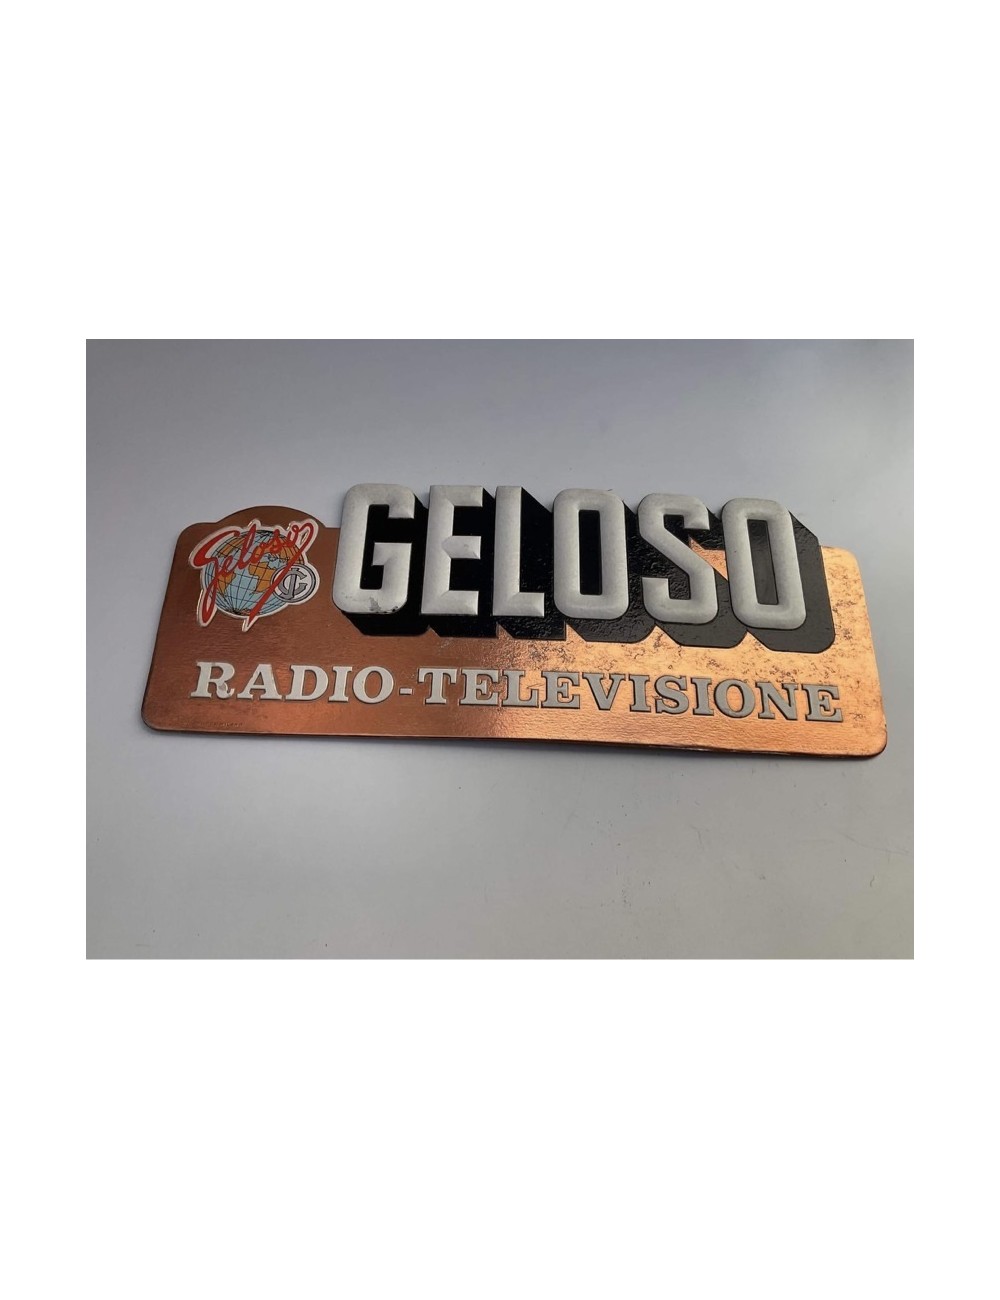 Cartone pubblicitario Geloso- Radio Televisione. Dimensioni : 32 cm x 12 cm